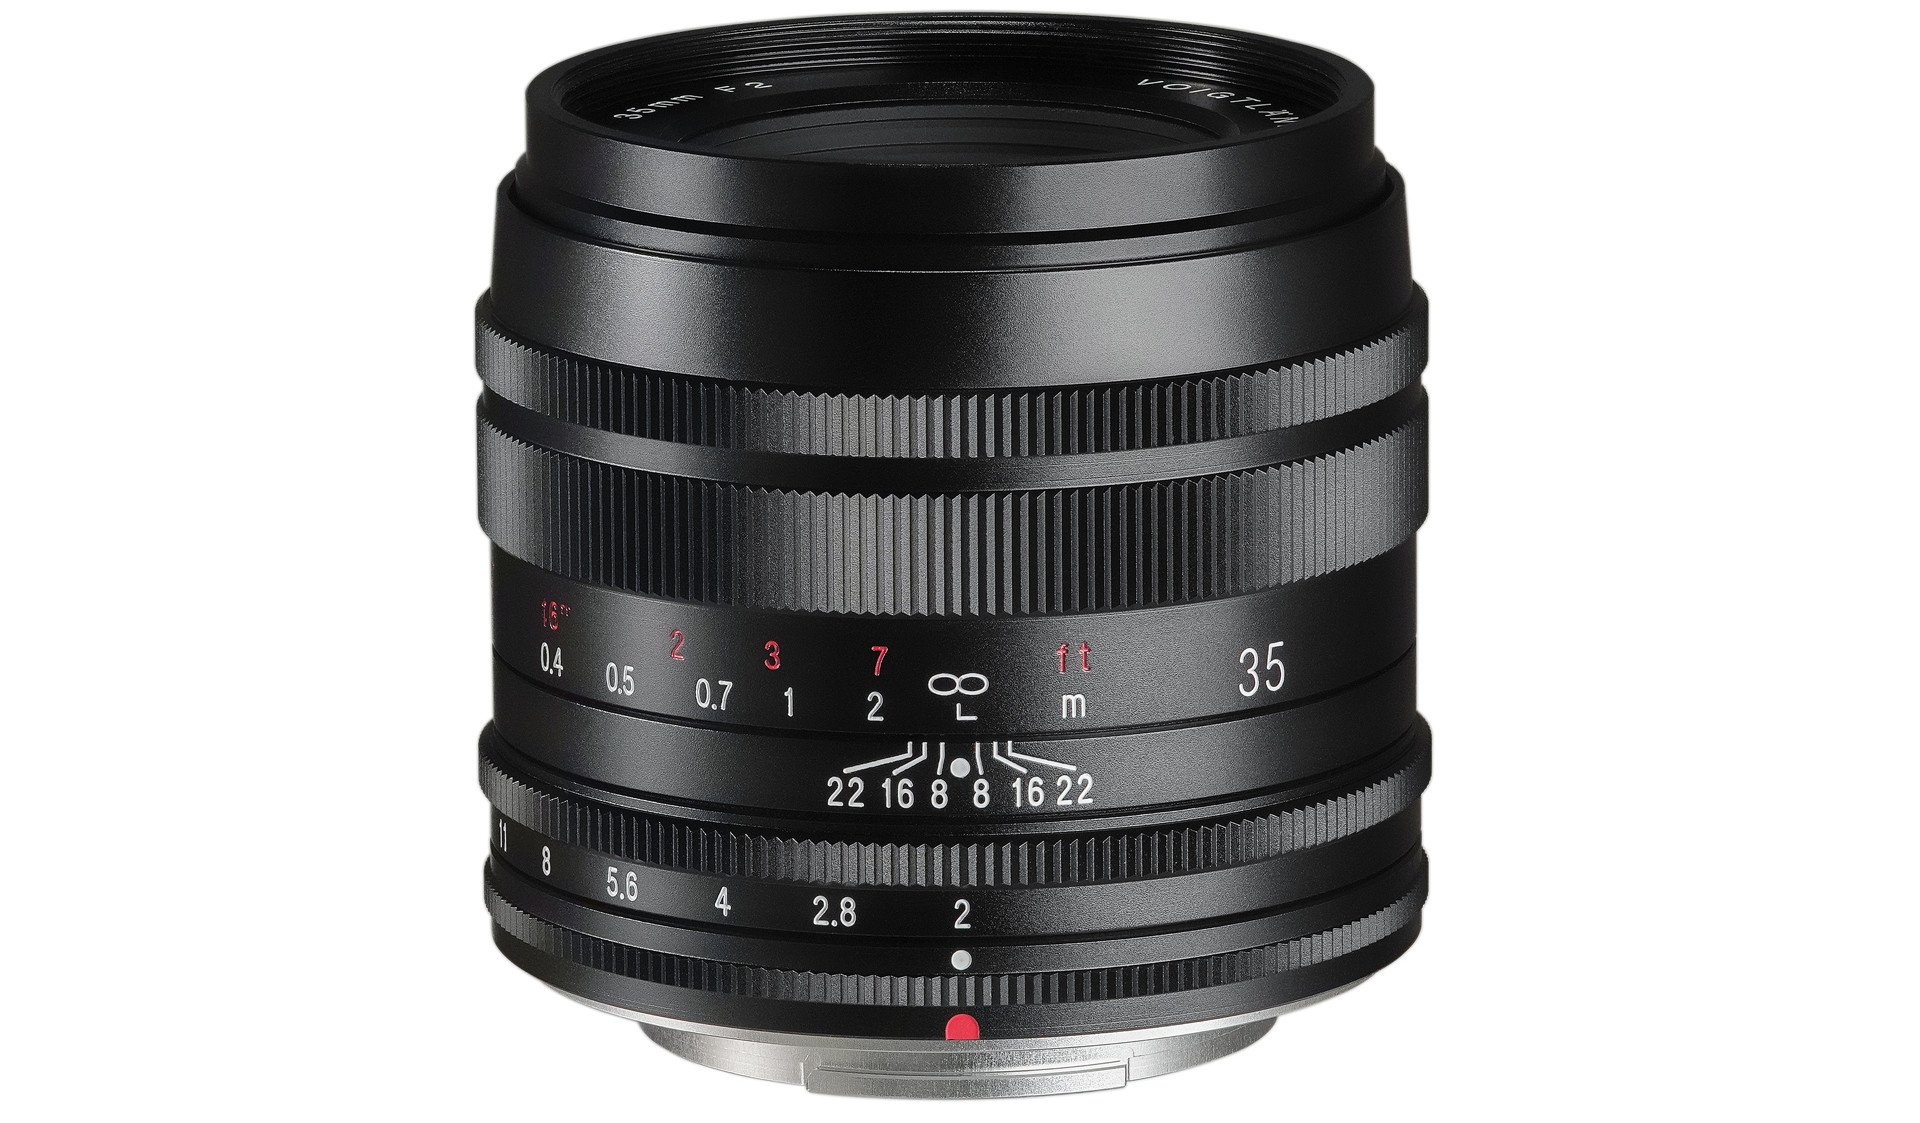 Corsina ra mắt ống kính Voigtlander Macro 35mm F2 dành riêng cho máy ảnh Fujifilm X